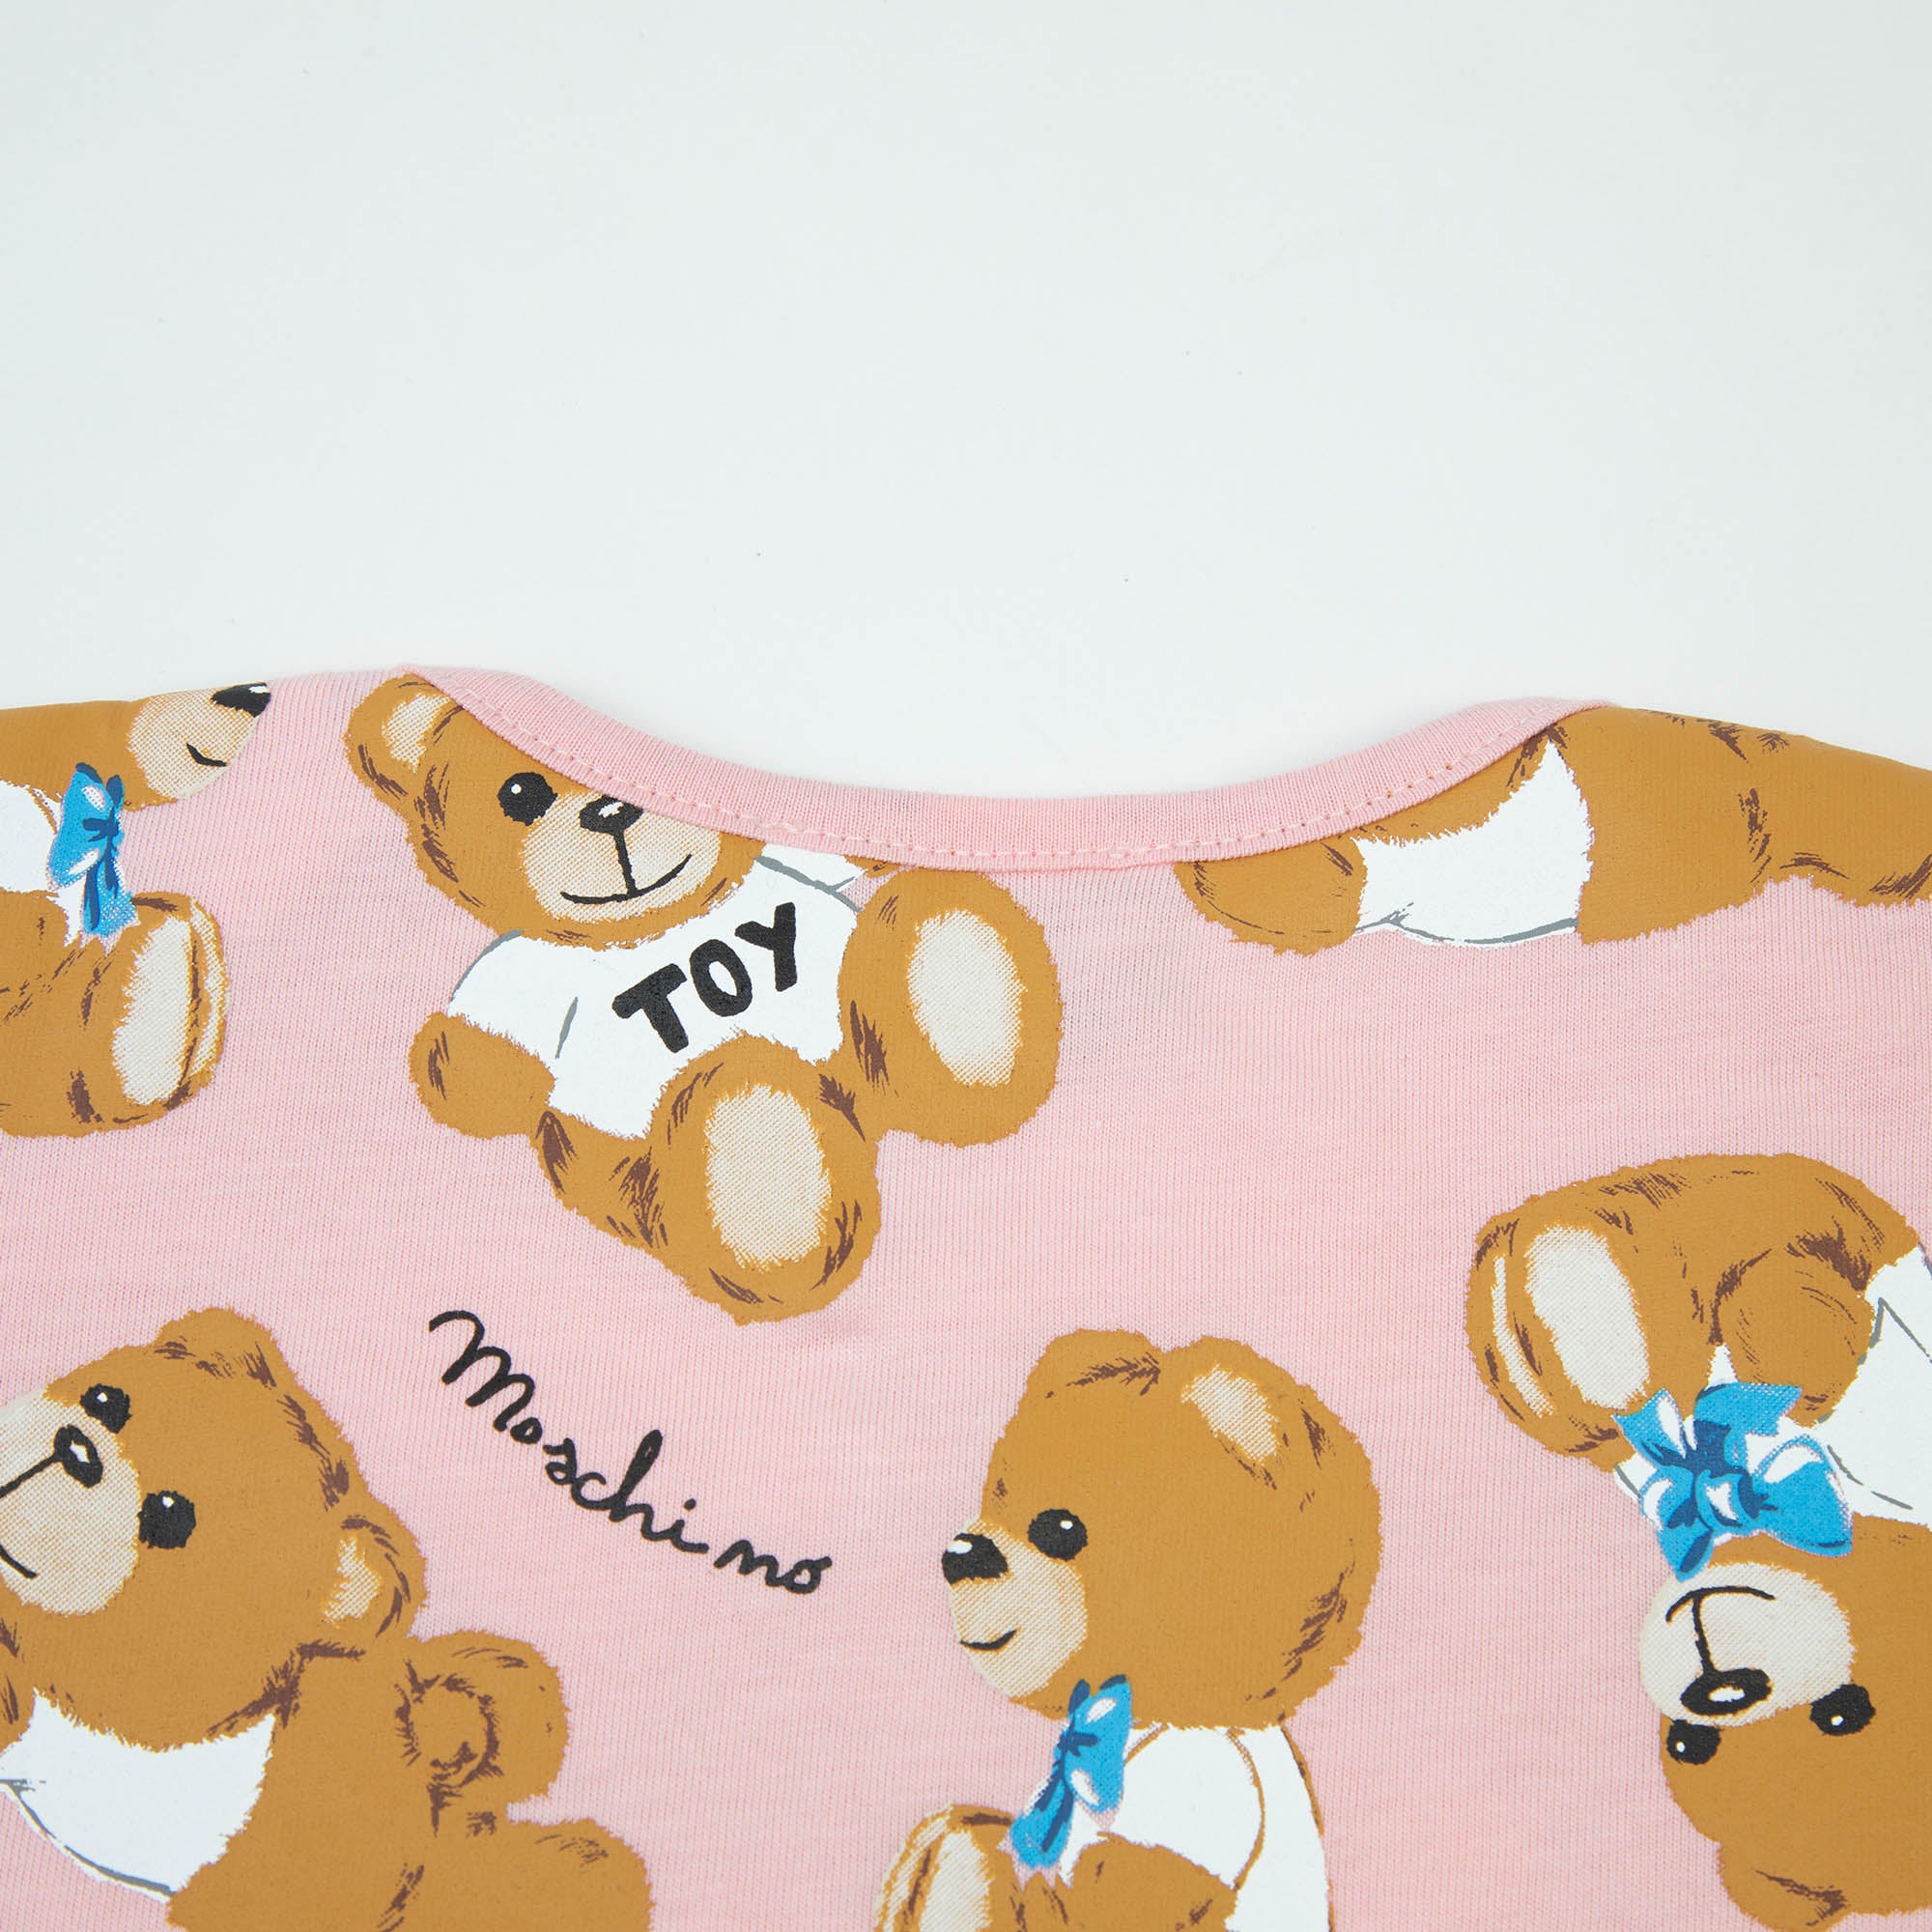 Baby Girls Pink Printed Cotton Babysuit